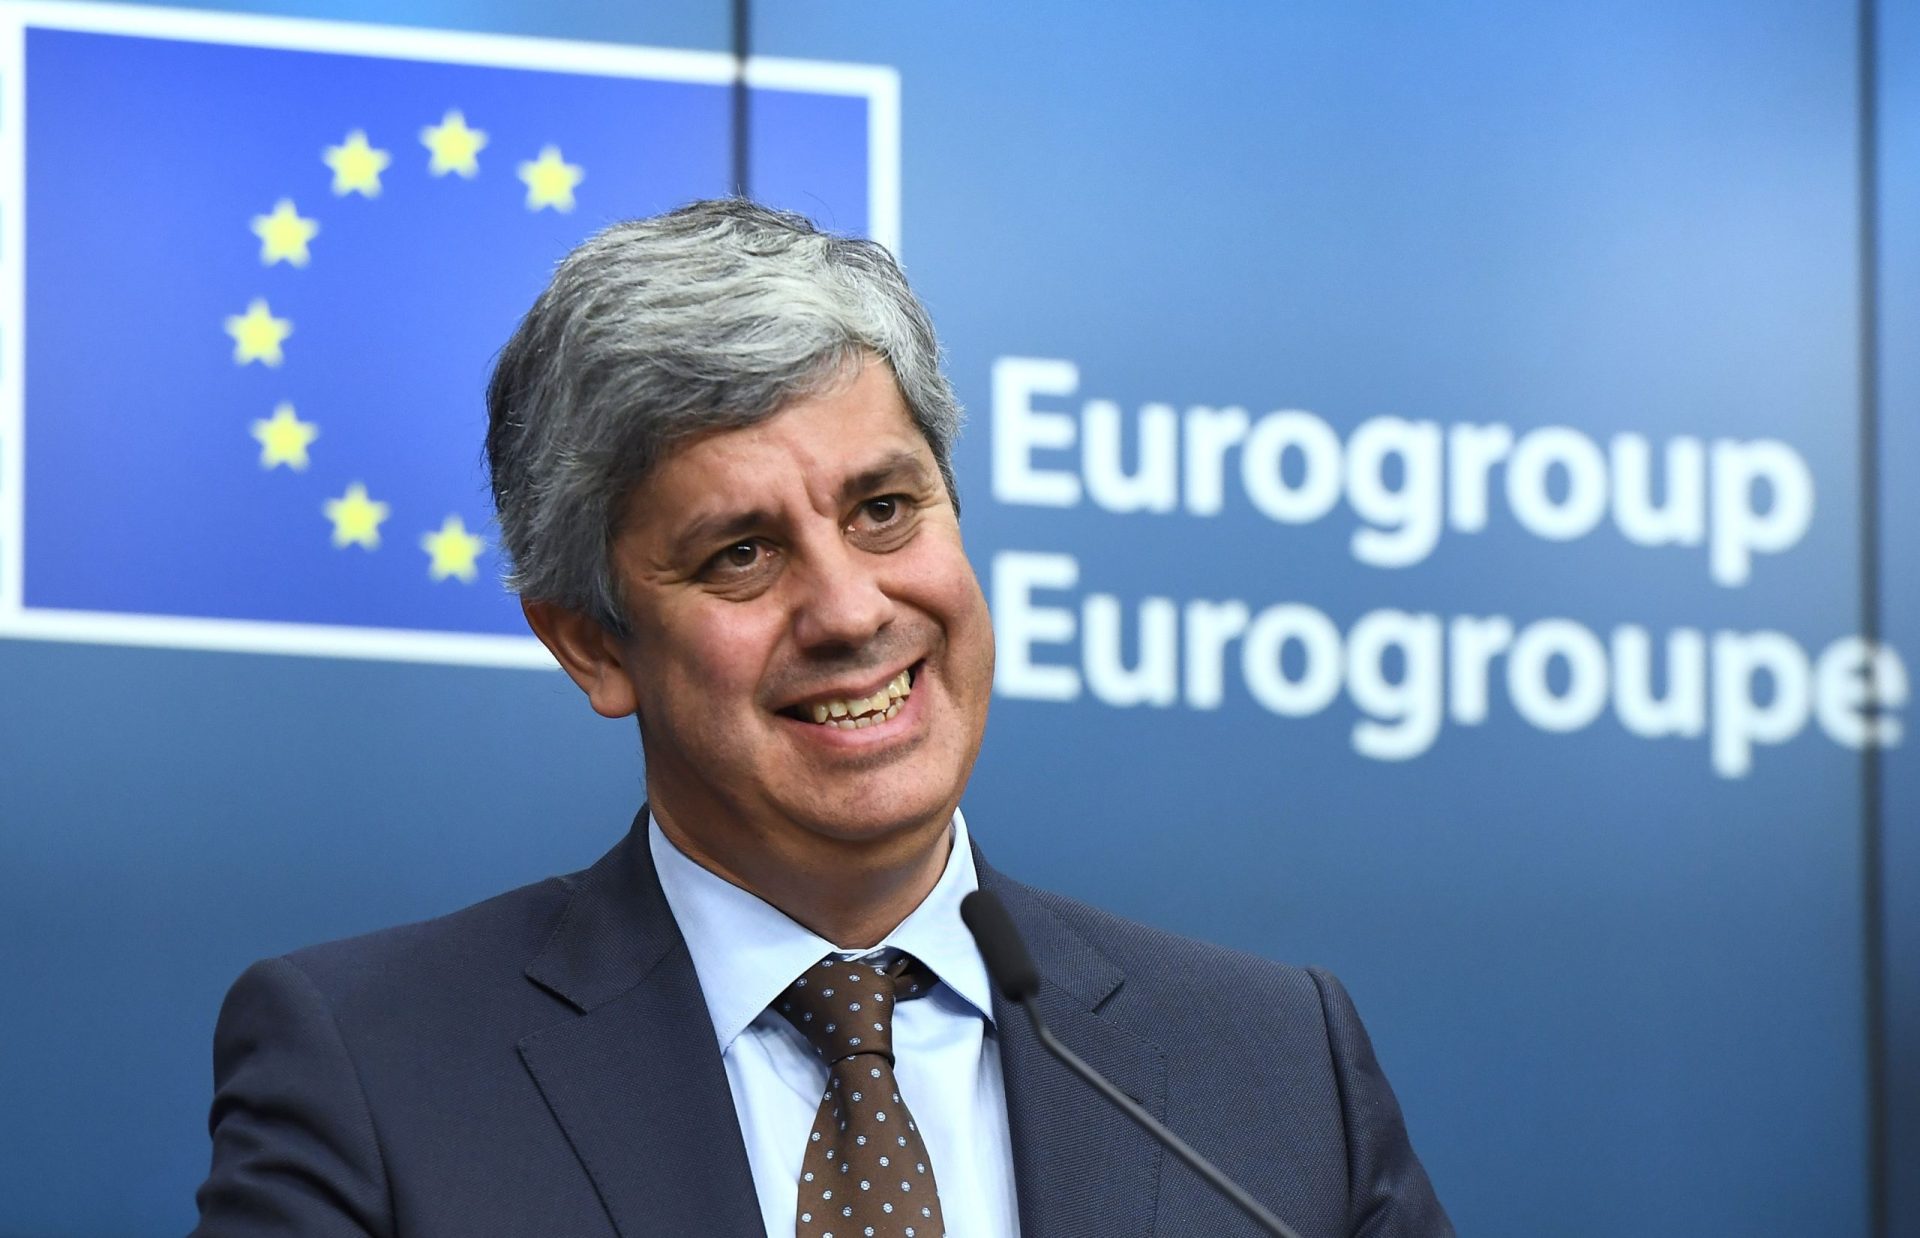 Eurogrupo. “Esta eleição não muda nada em Portugal”, garante Centeno